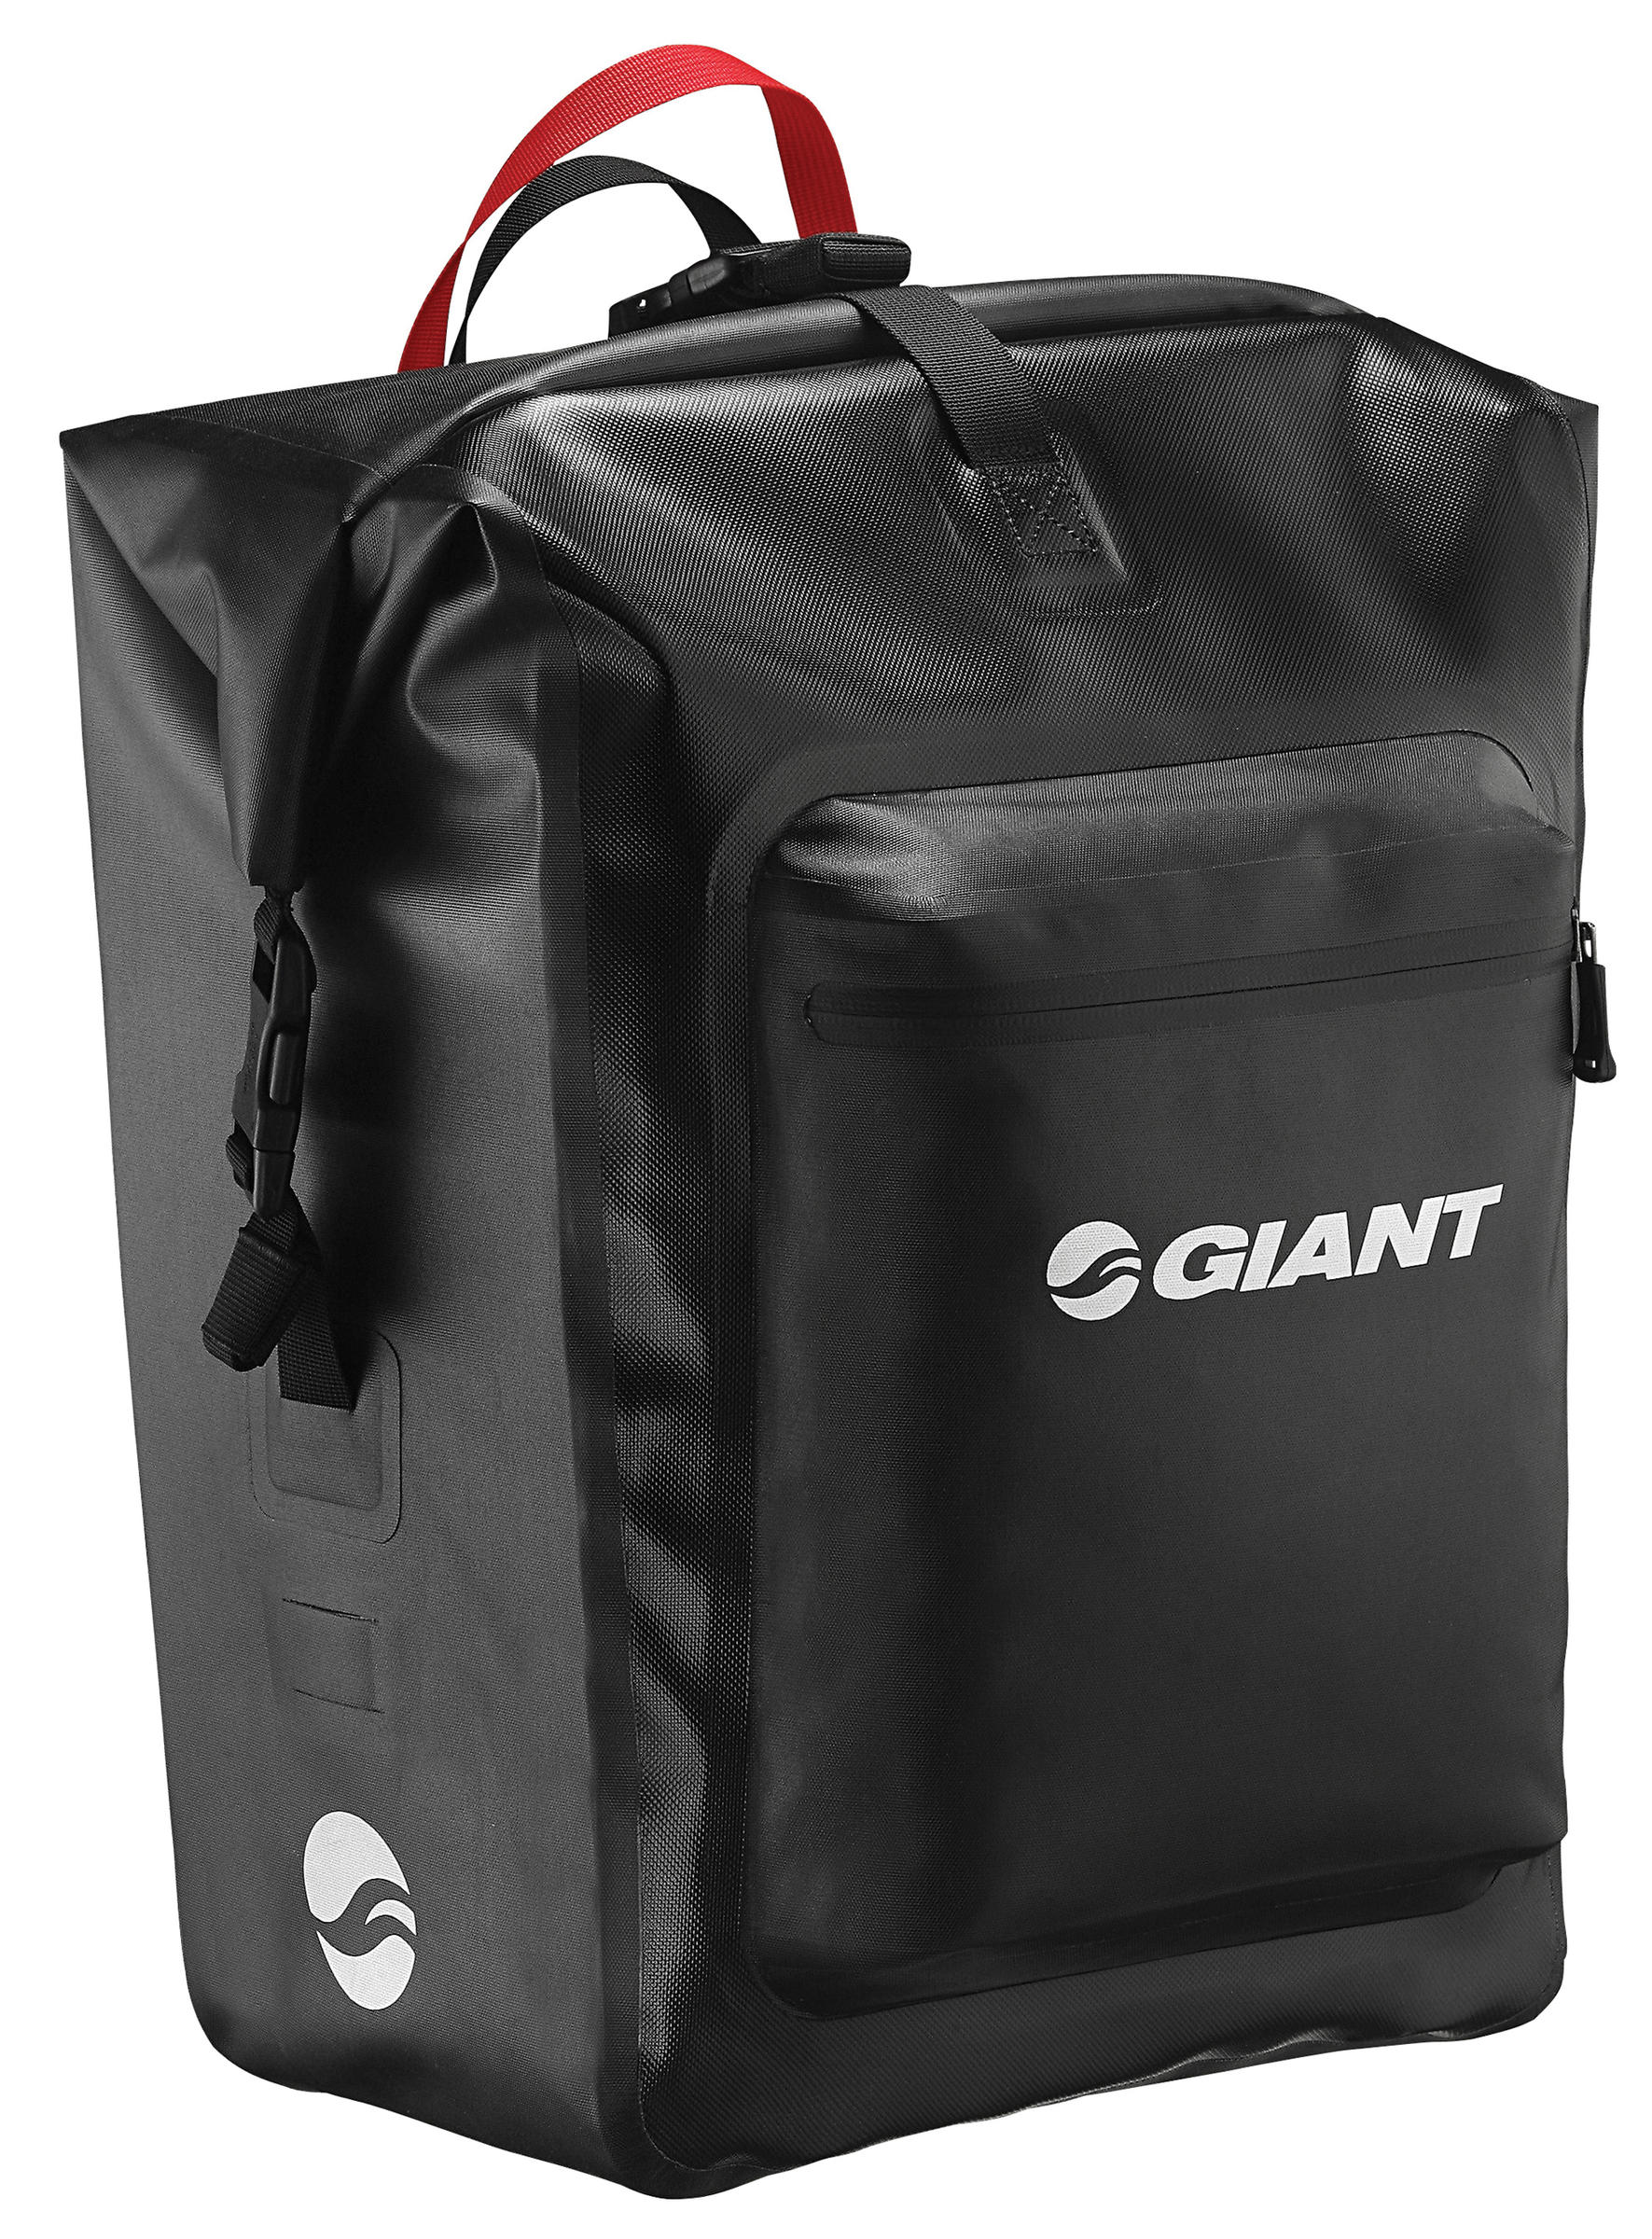 giant waterproof bag